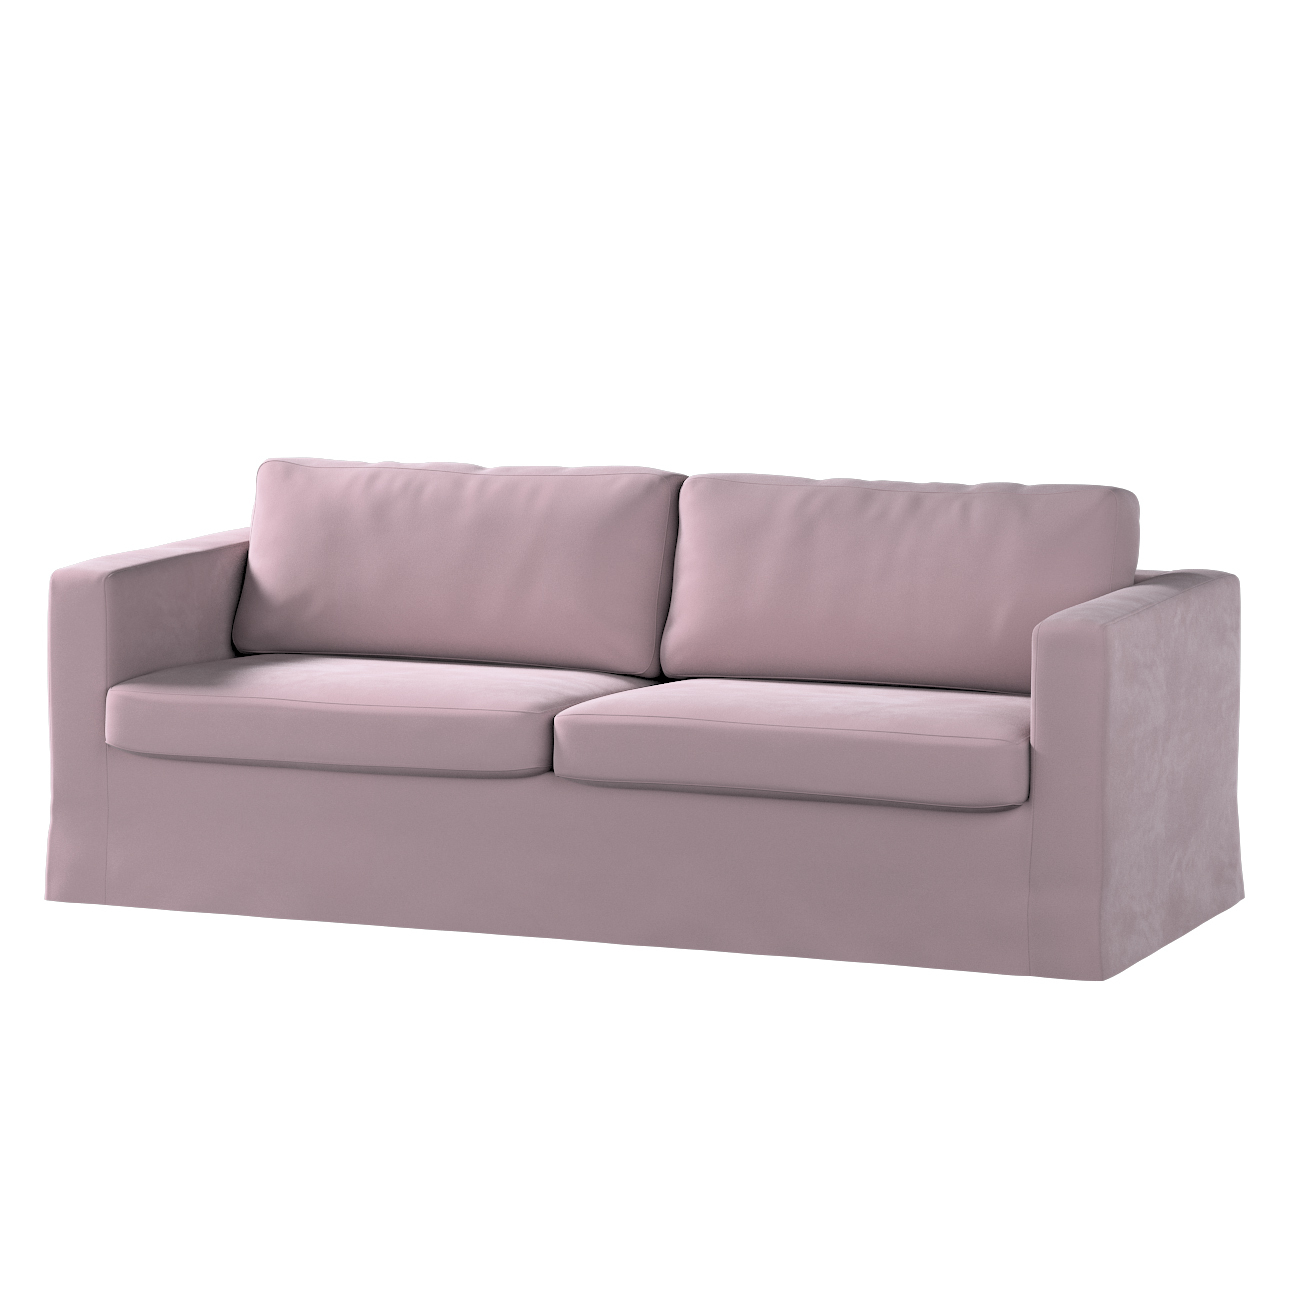 Bezug für Karlstad 3-Sitzer Sofa nicht ausklappbar, lang, rosa, Bezug für S günstig online kaufen